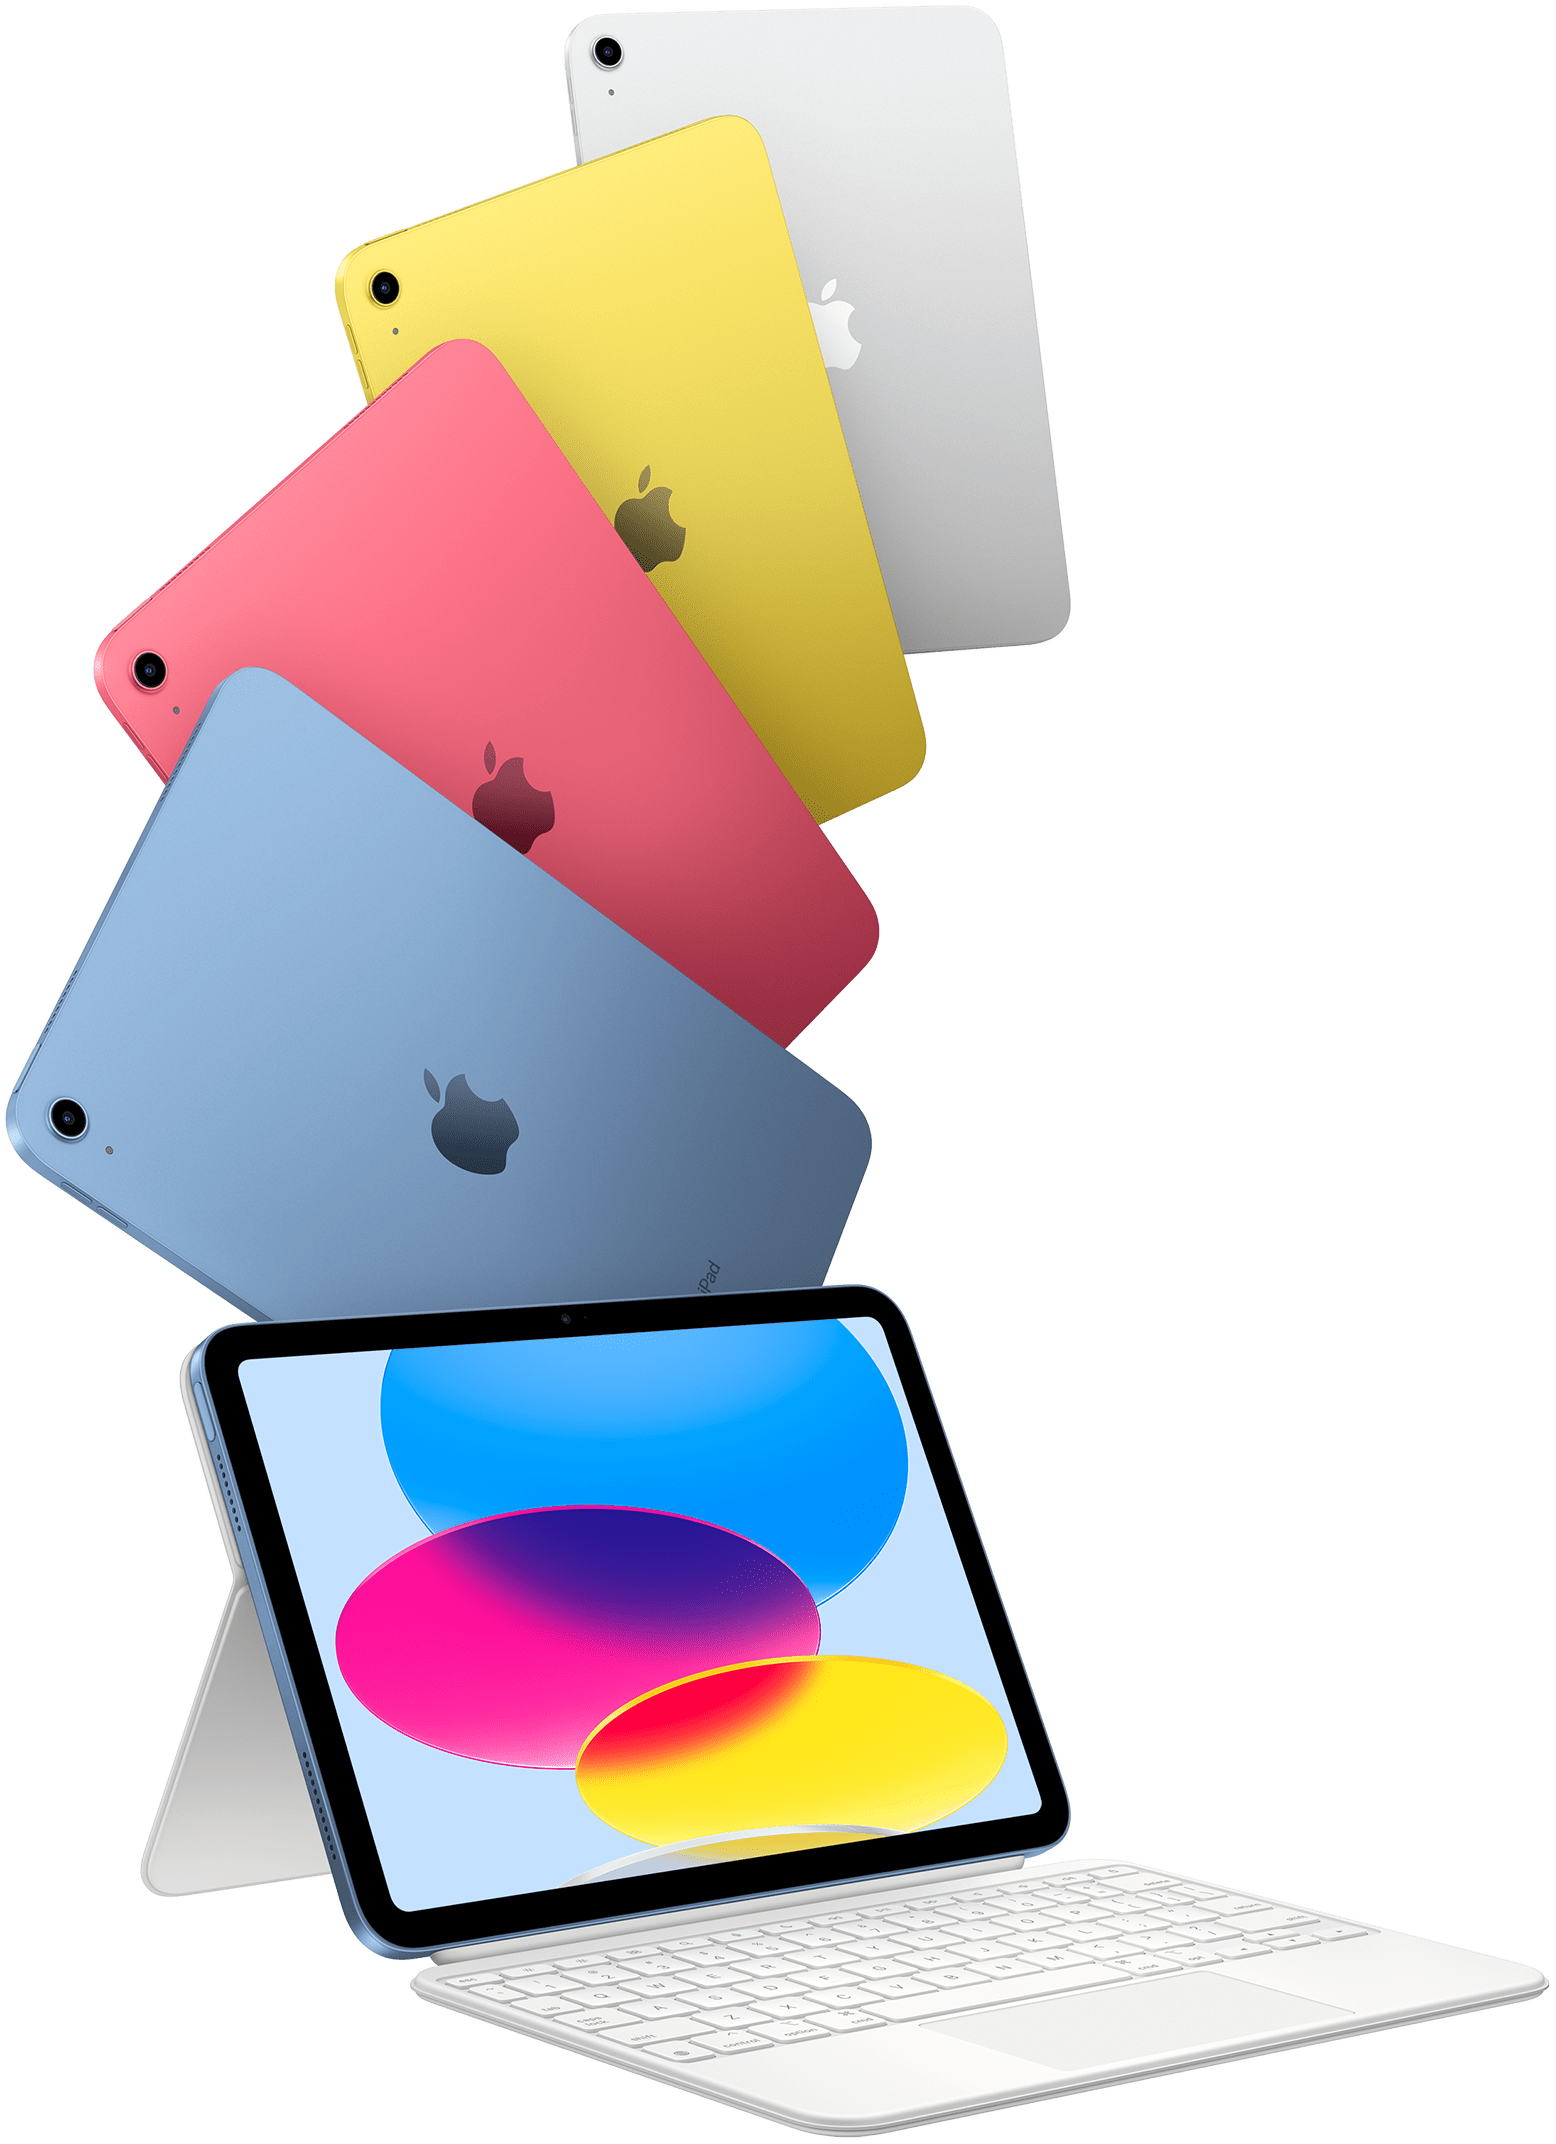 iPad en azul, rosa, amarillo y plata junto a otro iPad acoplado a un Magic Keyboard Folio.